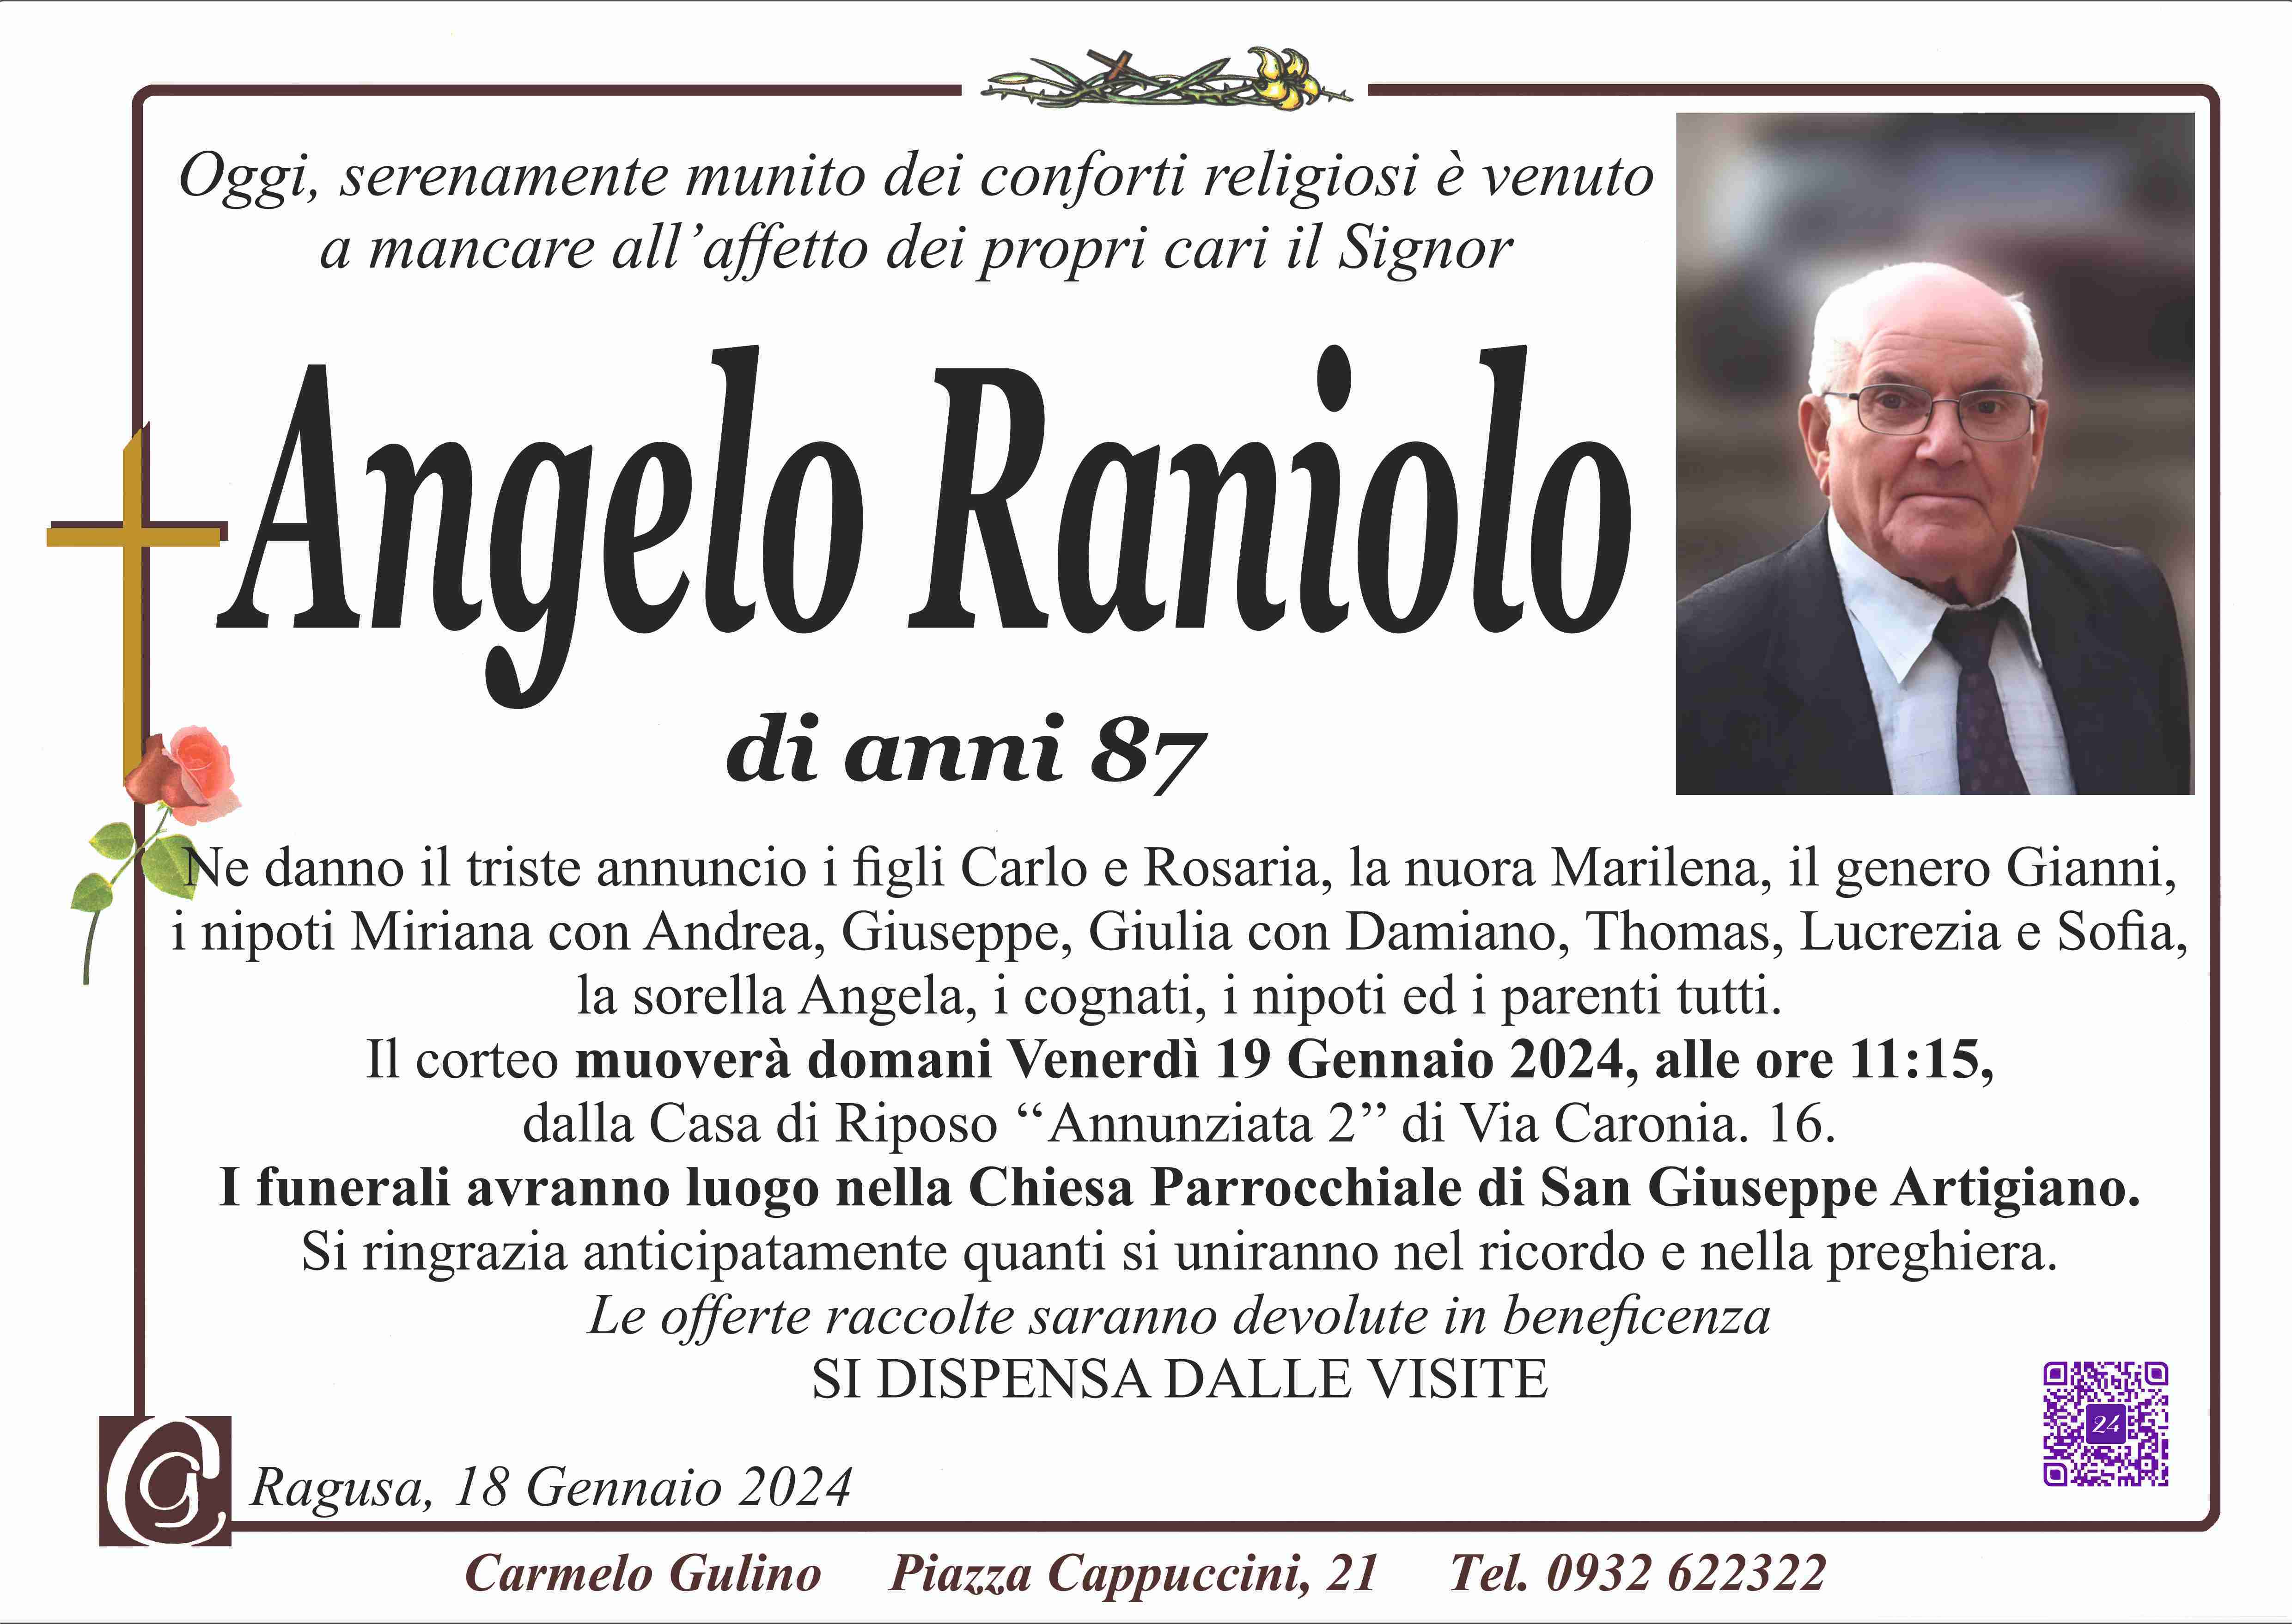 Angelo Raniolo